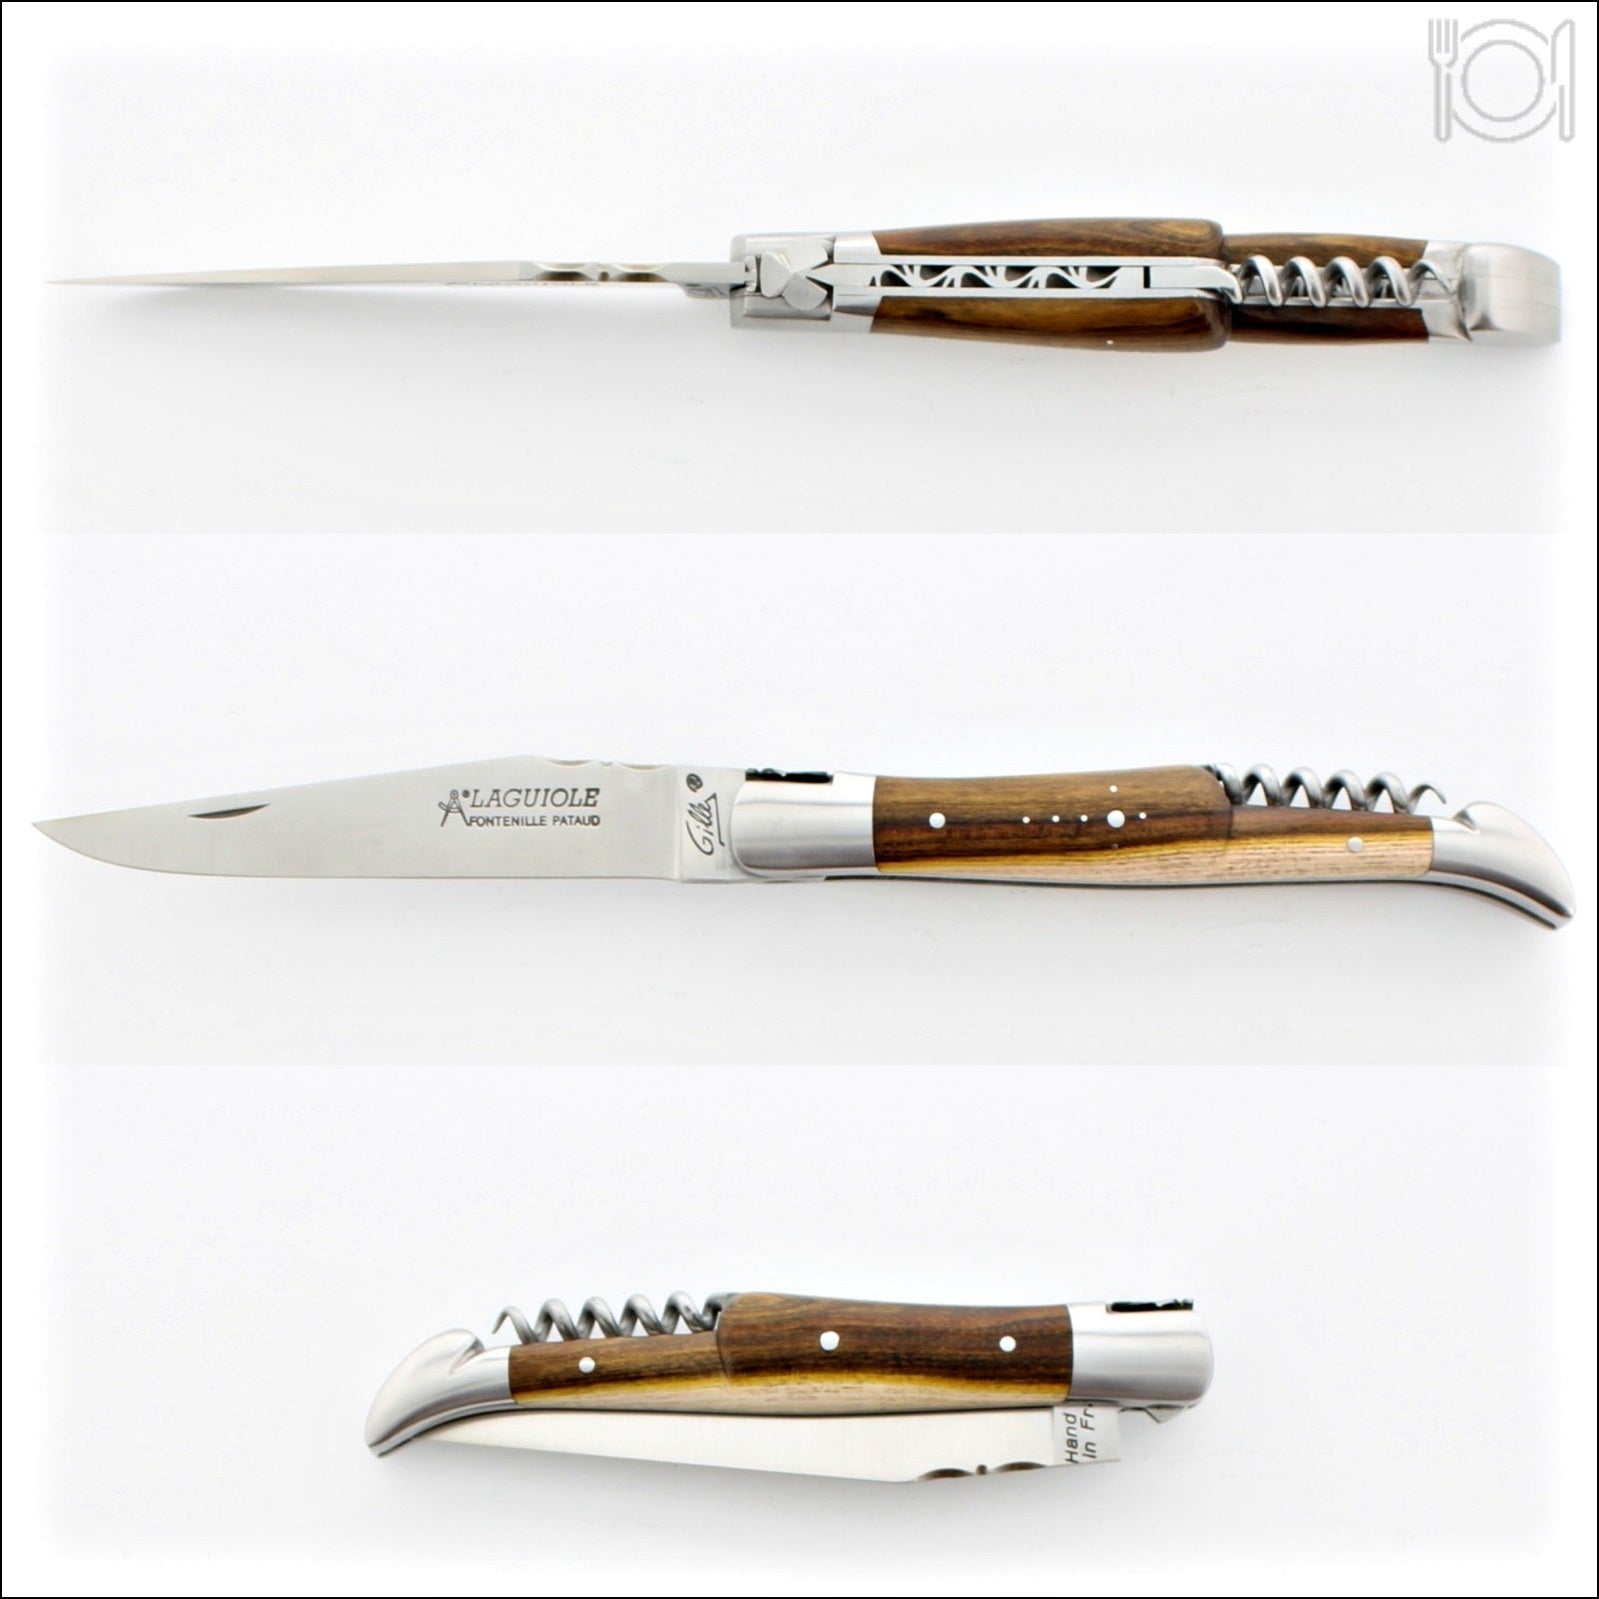 https://www.laguiole-imports.com/cdn/shop/products/Classic-Laguiole-Corkscrew-Knife-Pistachio-Handle-Fontenille-Pataud_2048x.jpg?v=1687355062